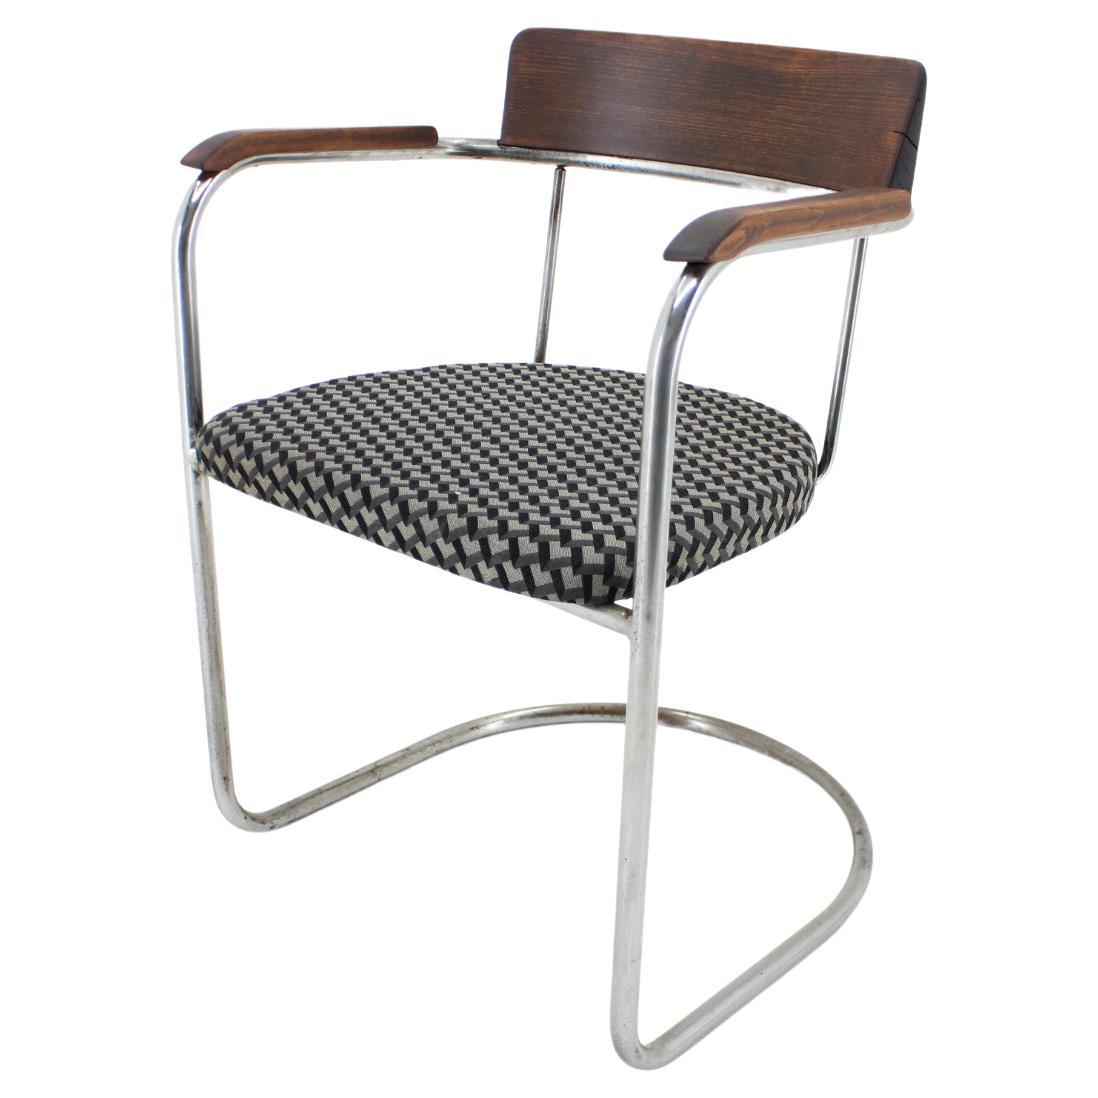 Bauhaus Tubular Steel Chrome Desk Chair 1930s / Czechoslovakia